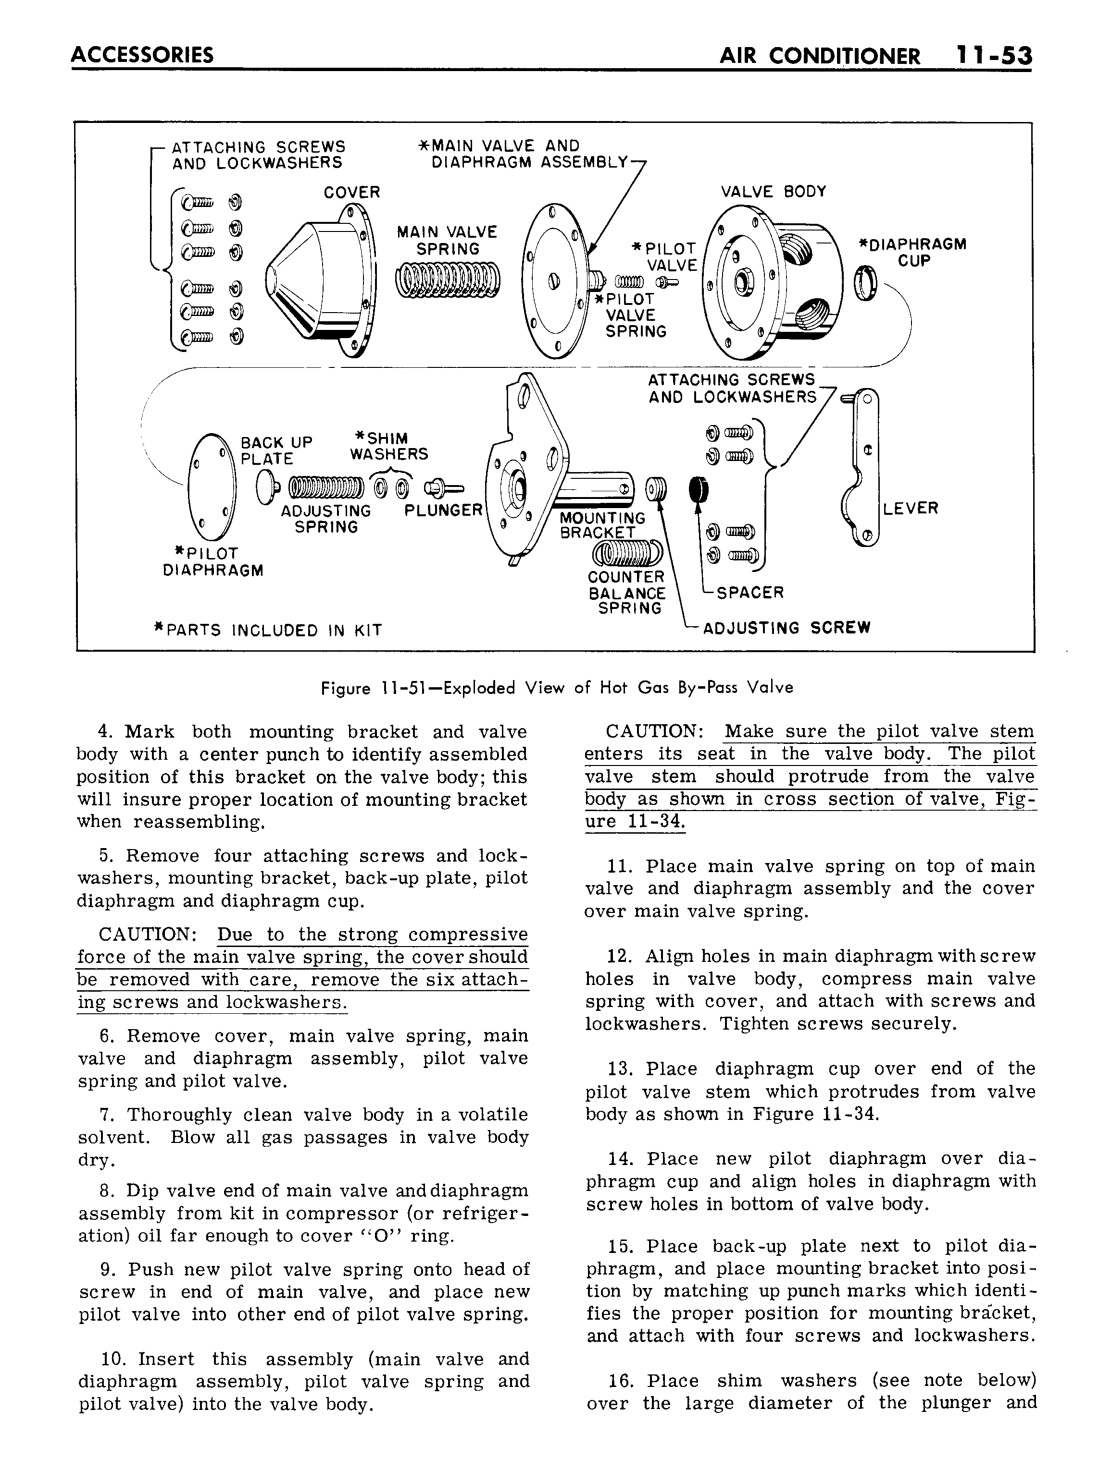 n_11 1961 Buick Shop Manual - Accessories-053-053.jpg